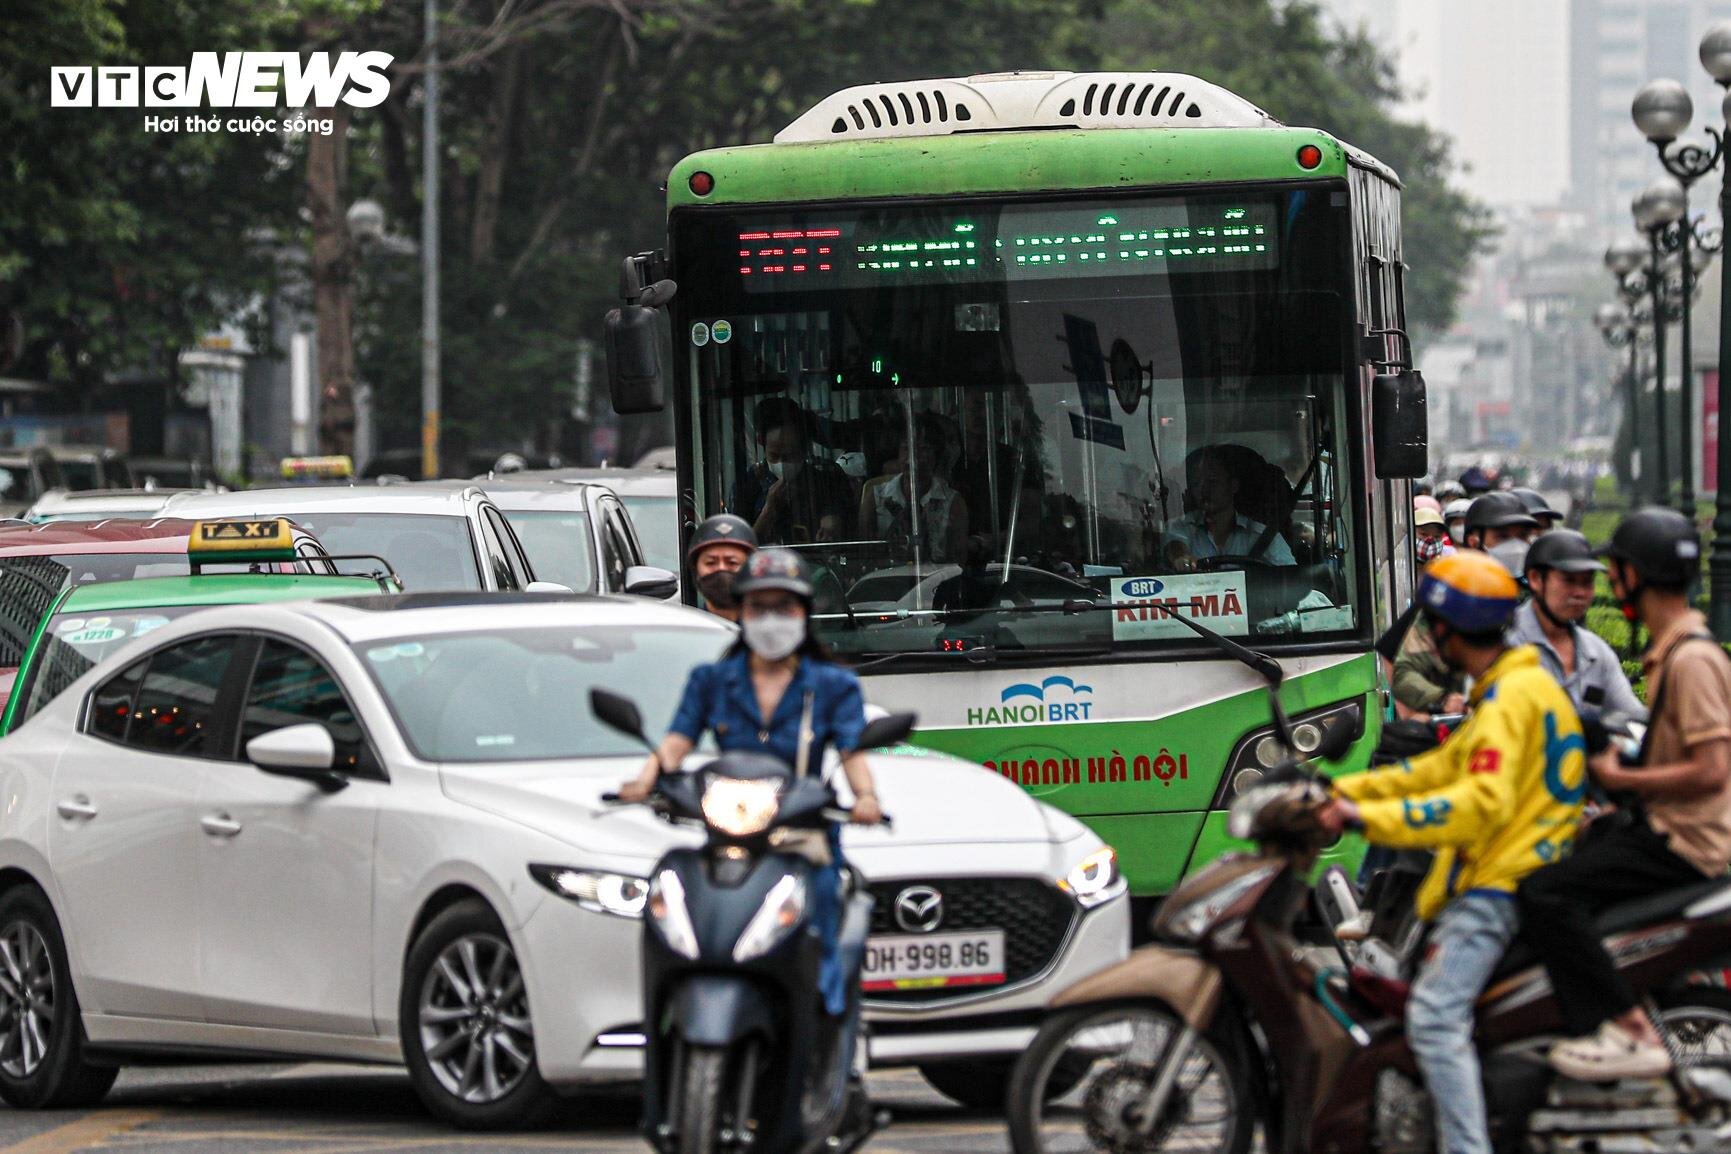 Bị cướp làn đường, buýt nhanh BRT chôn chân trên phố Hà Nội - 7